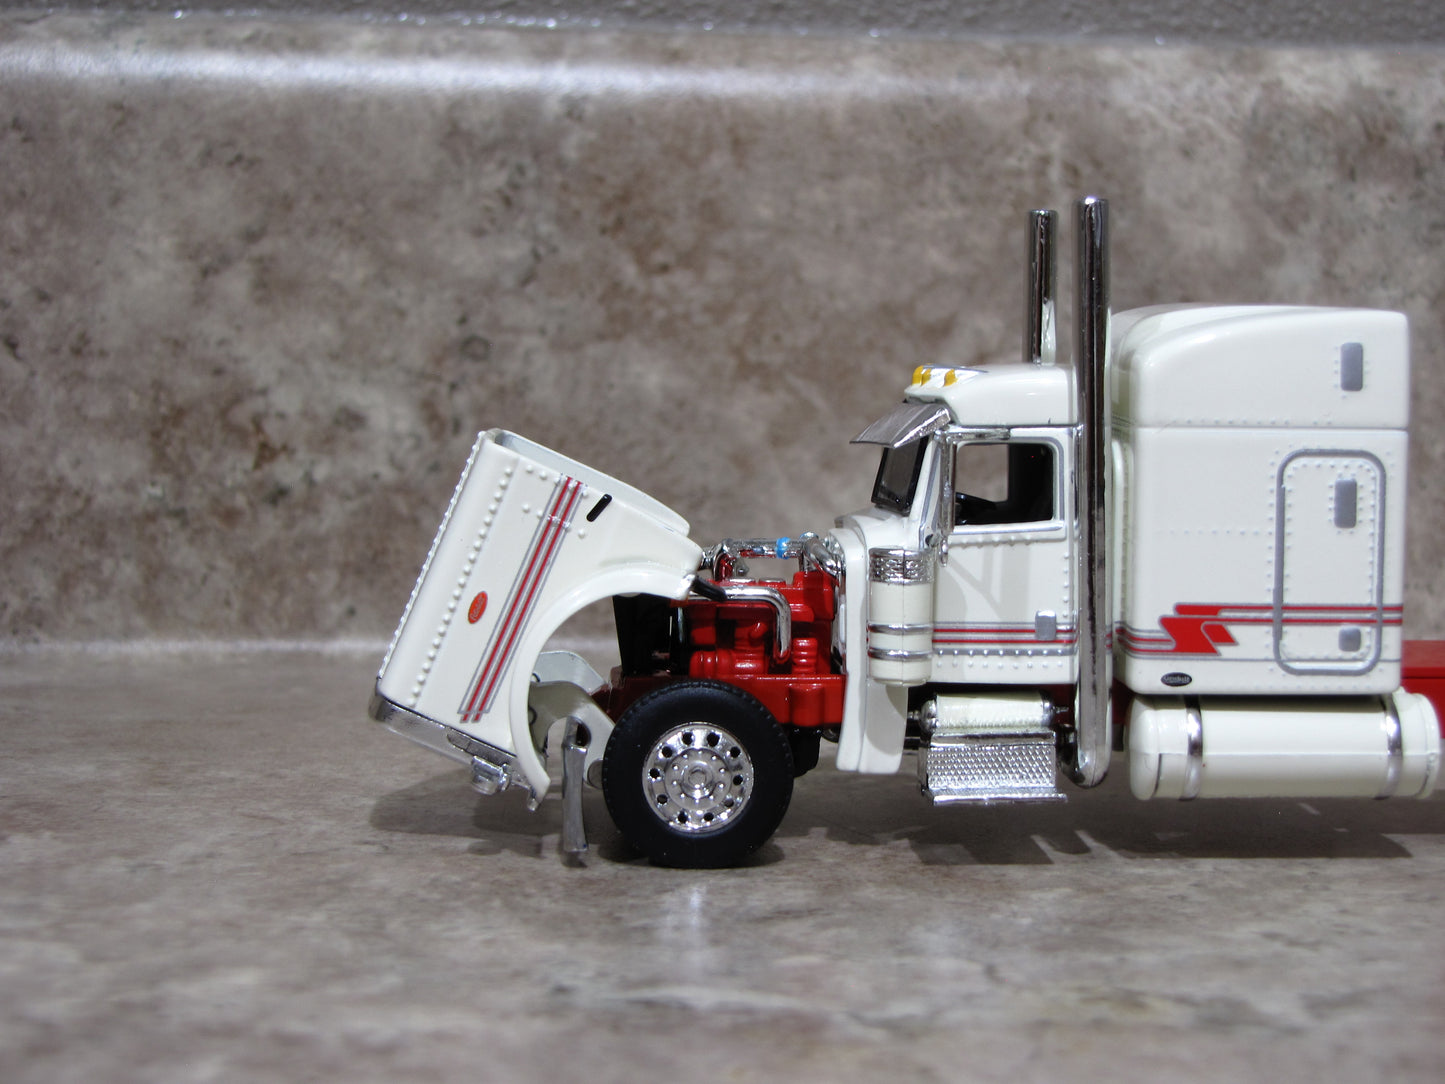 CAB 1736 Cream / Red 389 Peterbilt Semi Truck